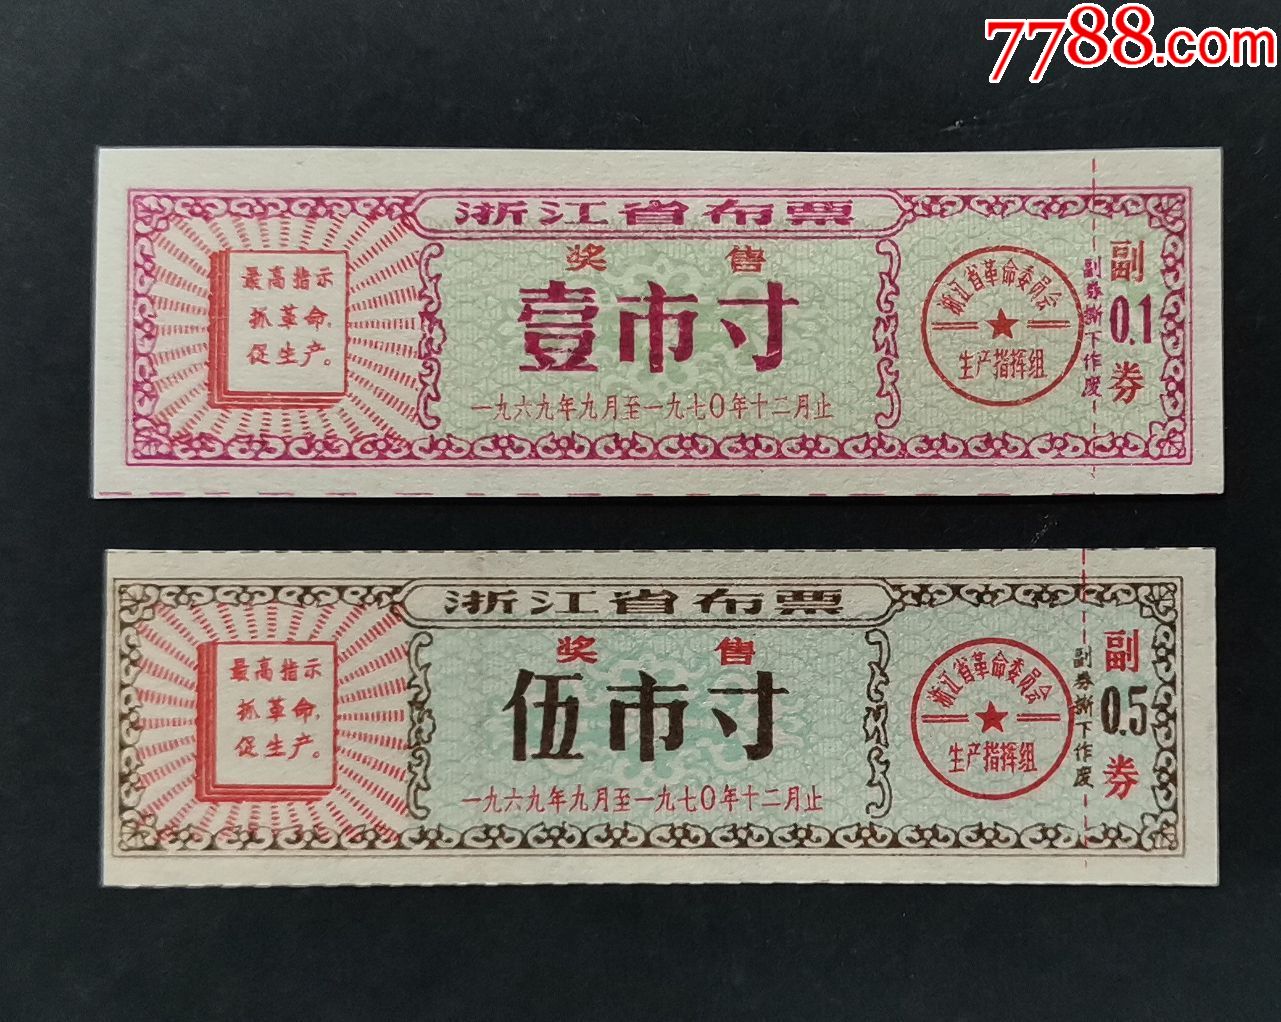 1969-70年浙江省奖售布票.